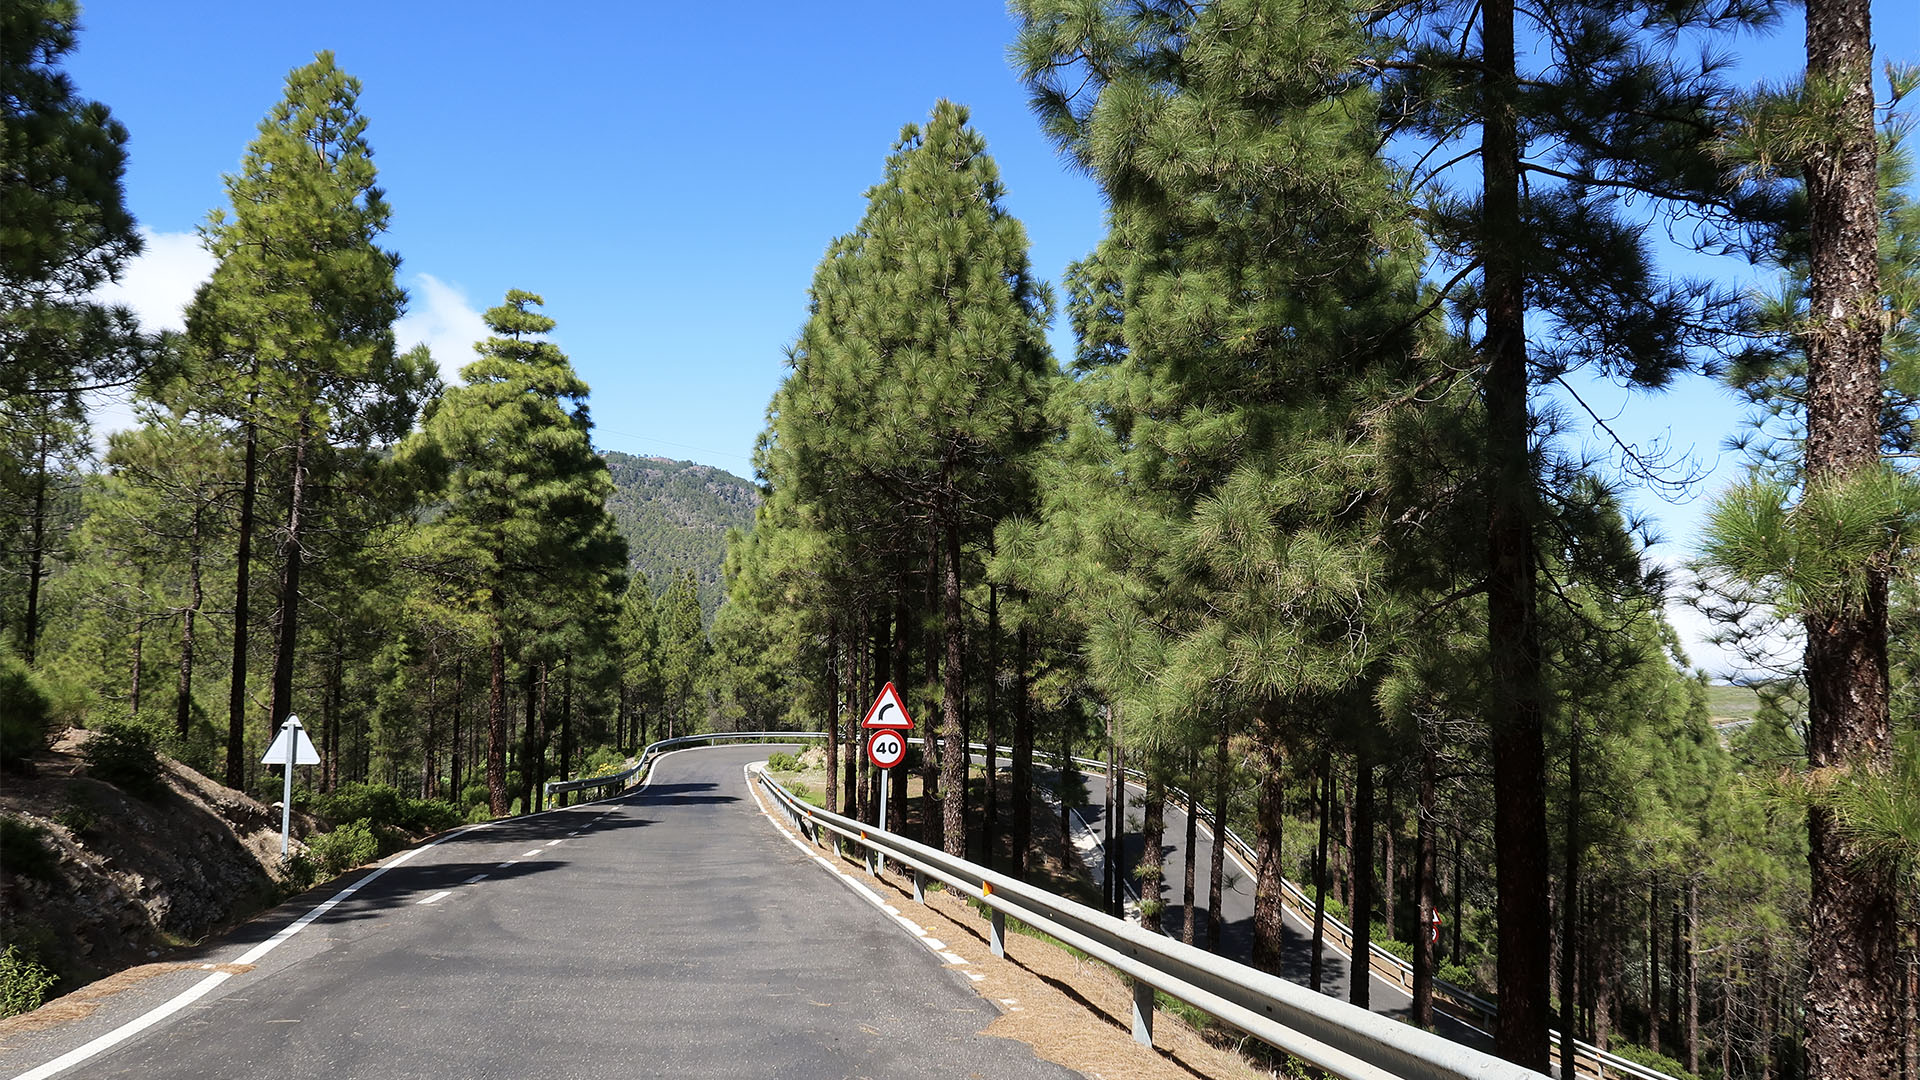 Die GC-217 führt durch den herrlichen Kiefernwald des Naturschutzgebietes Tamadaba nach Las Hoyas.